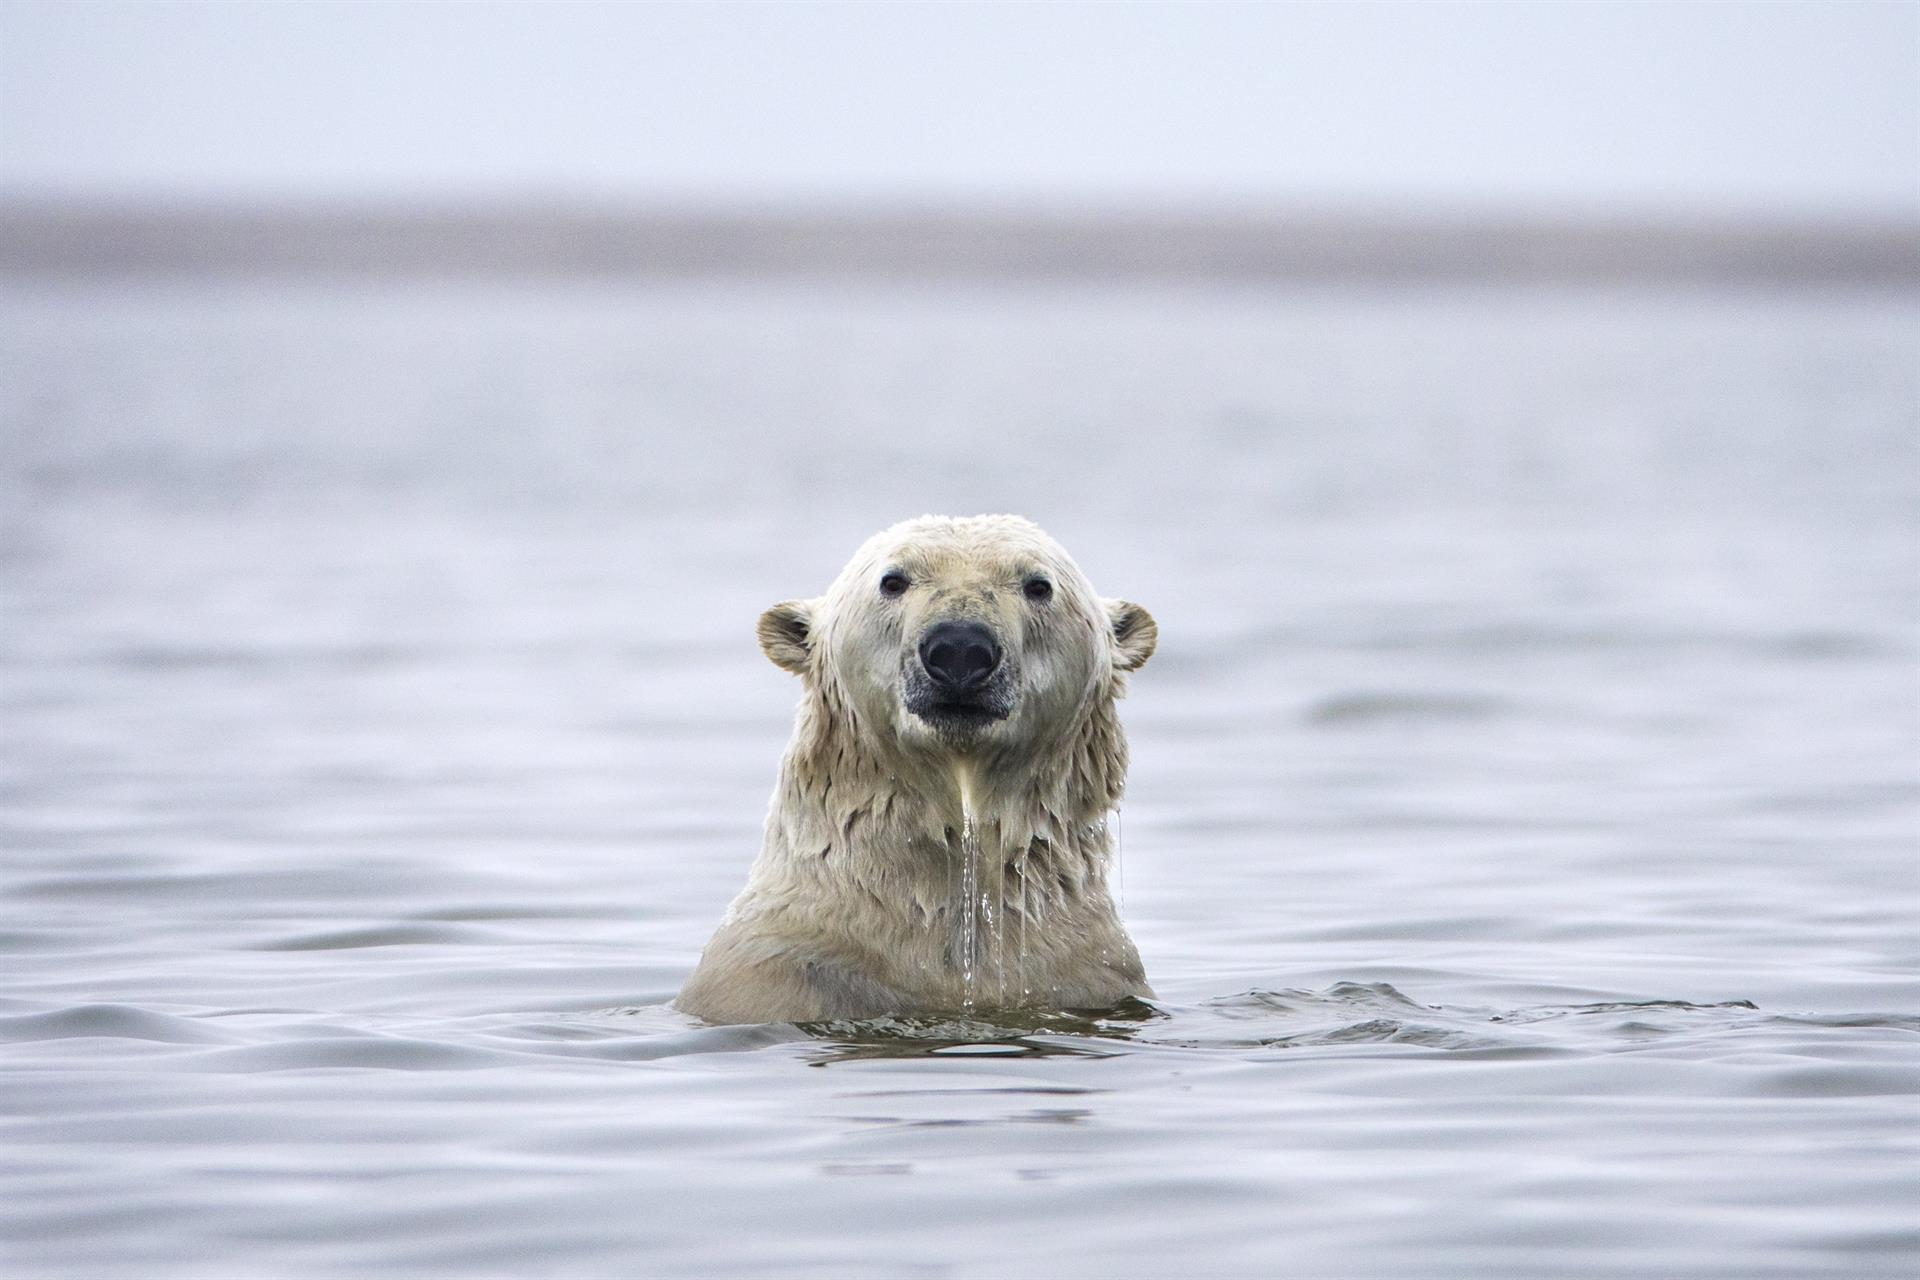 Fotografía de archivo que muestra a un oso polar mientras nada entre la barrera de una isla en el Refugio Nacional de Fauna Salvaje del Ártico, el más extenso de Estados Unidos, a las afueras de Kaktovik, Alaska (Estados Unidos). EFE/Jim Lo Scalzo
